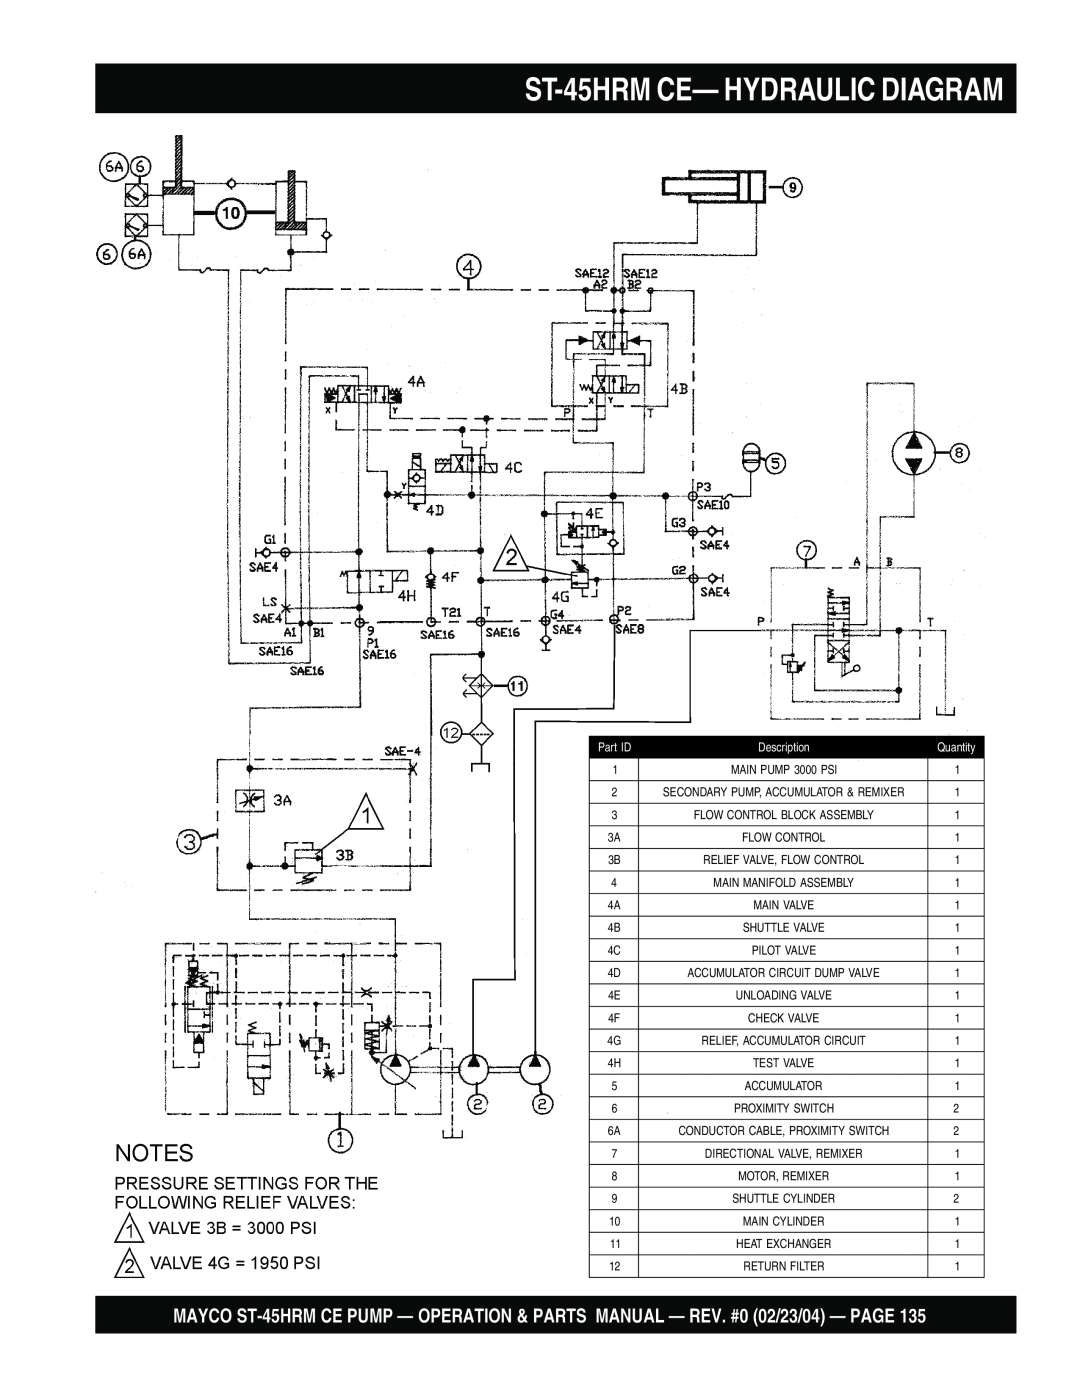 Multiquip ST-45HRM CE manual ST-45HRMCE— HYDRAULIC DIAGRAM, Description, Quantity 